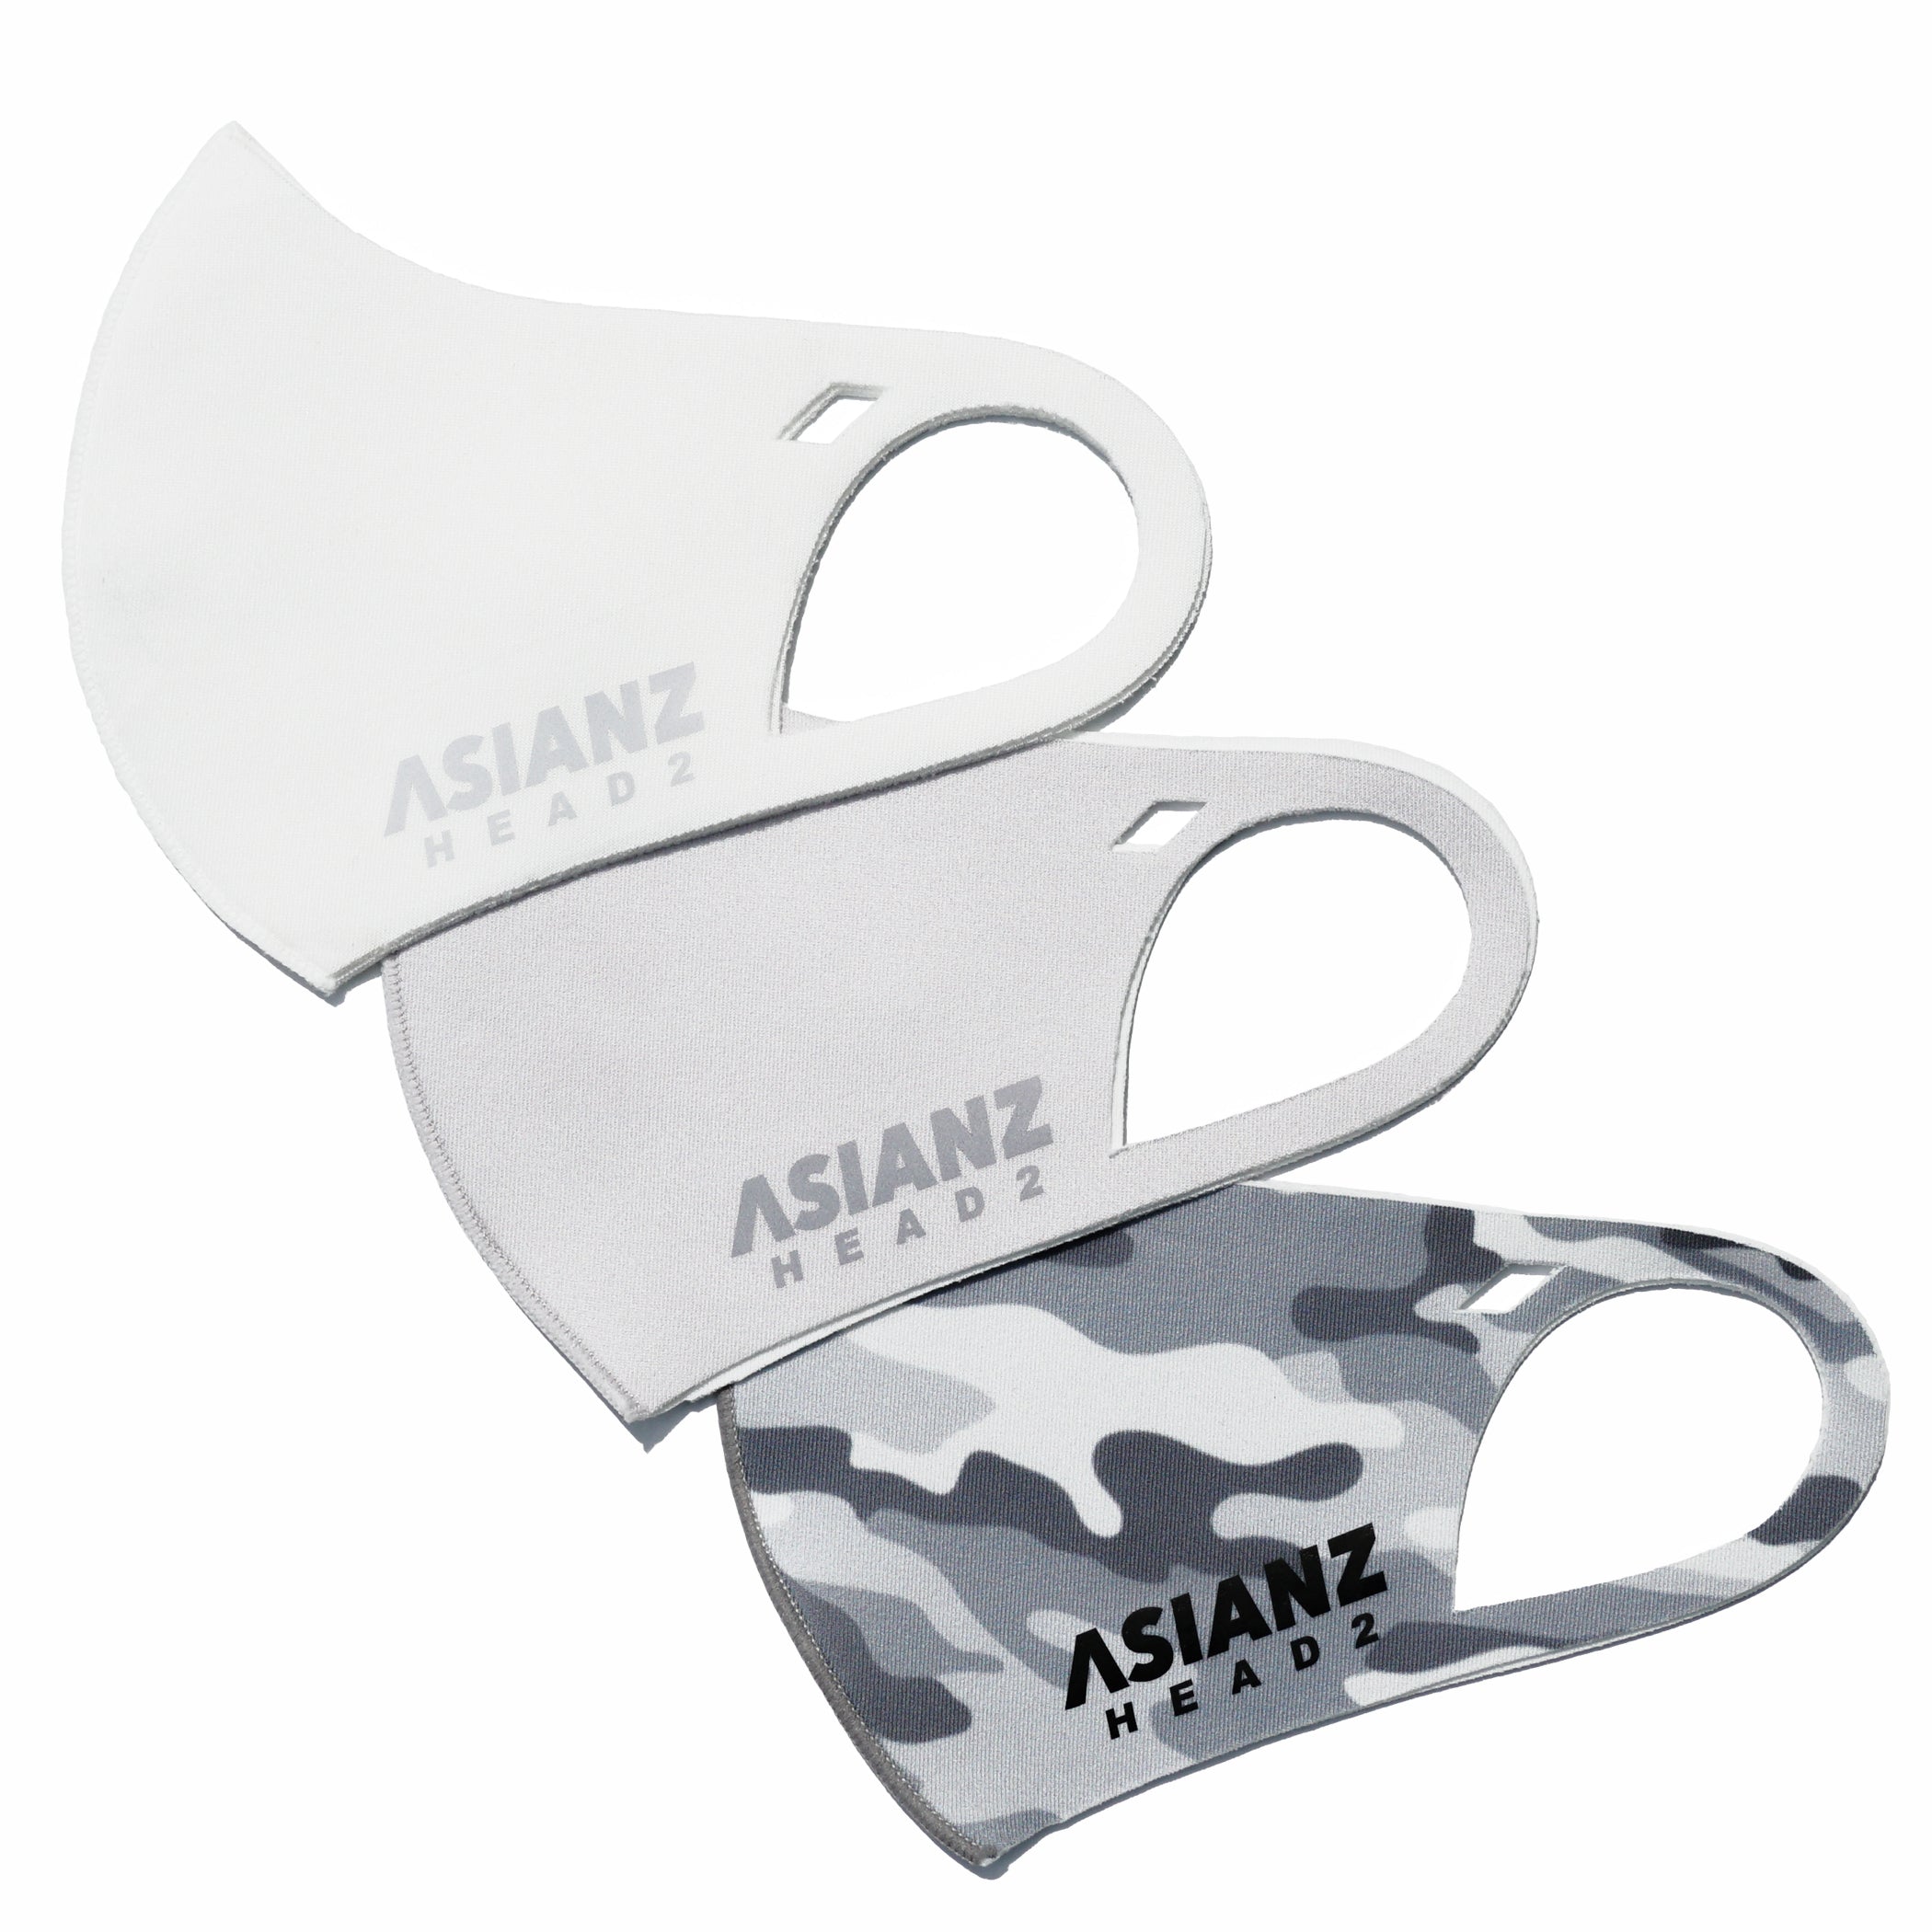 ミネラル マスク ASIANZ HEAD2 ロゴ ホワイト (20062501)